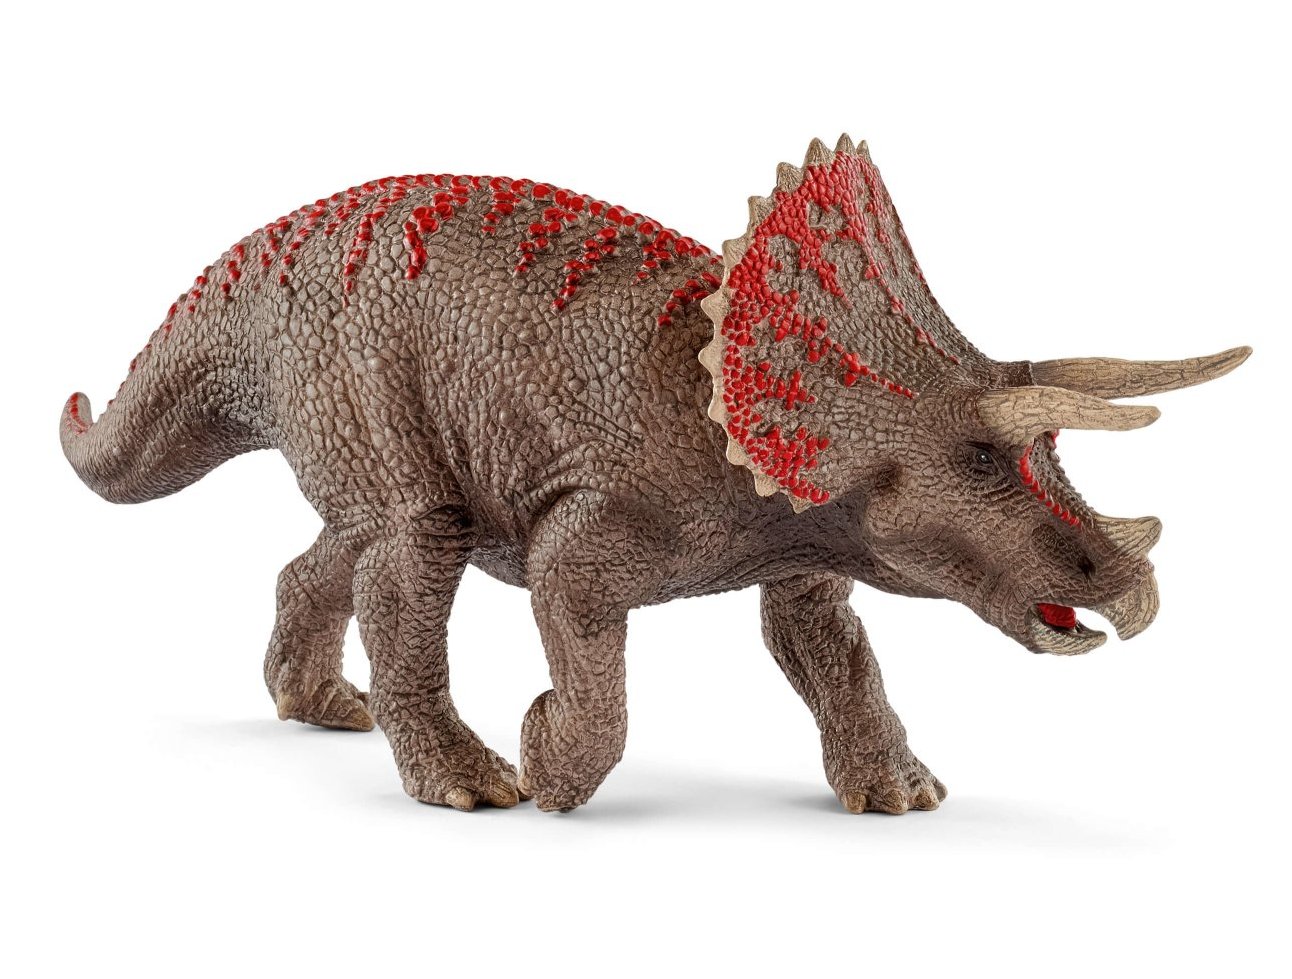 Figurina triceratops, Schleich 15000